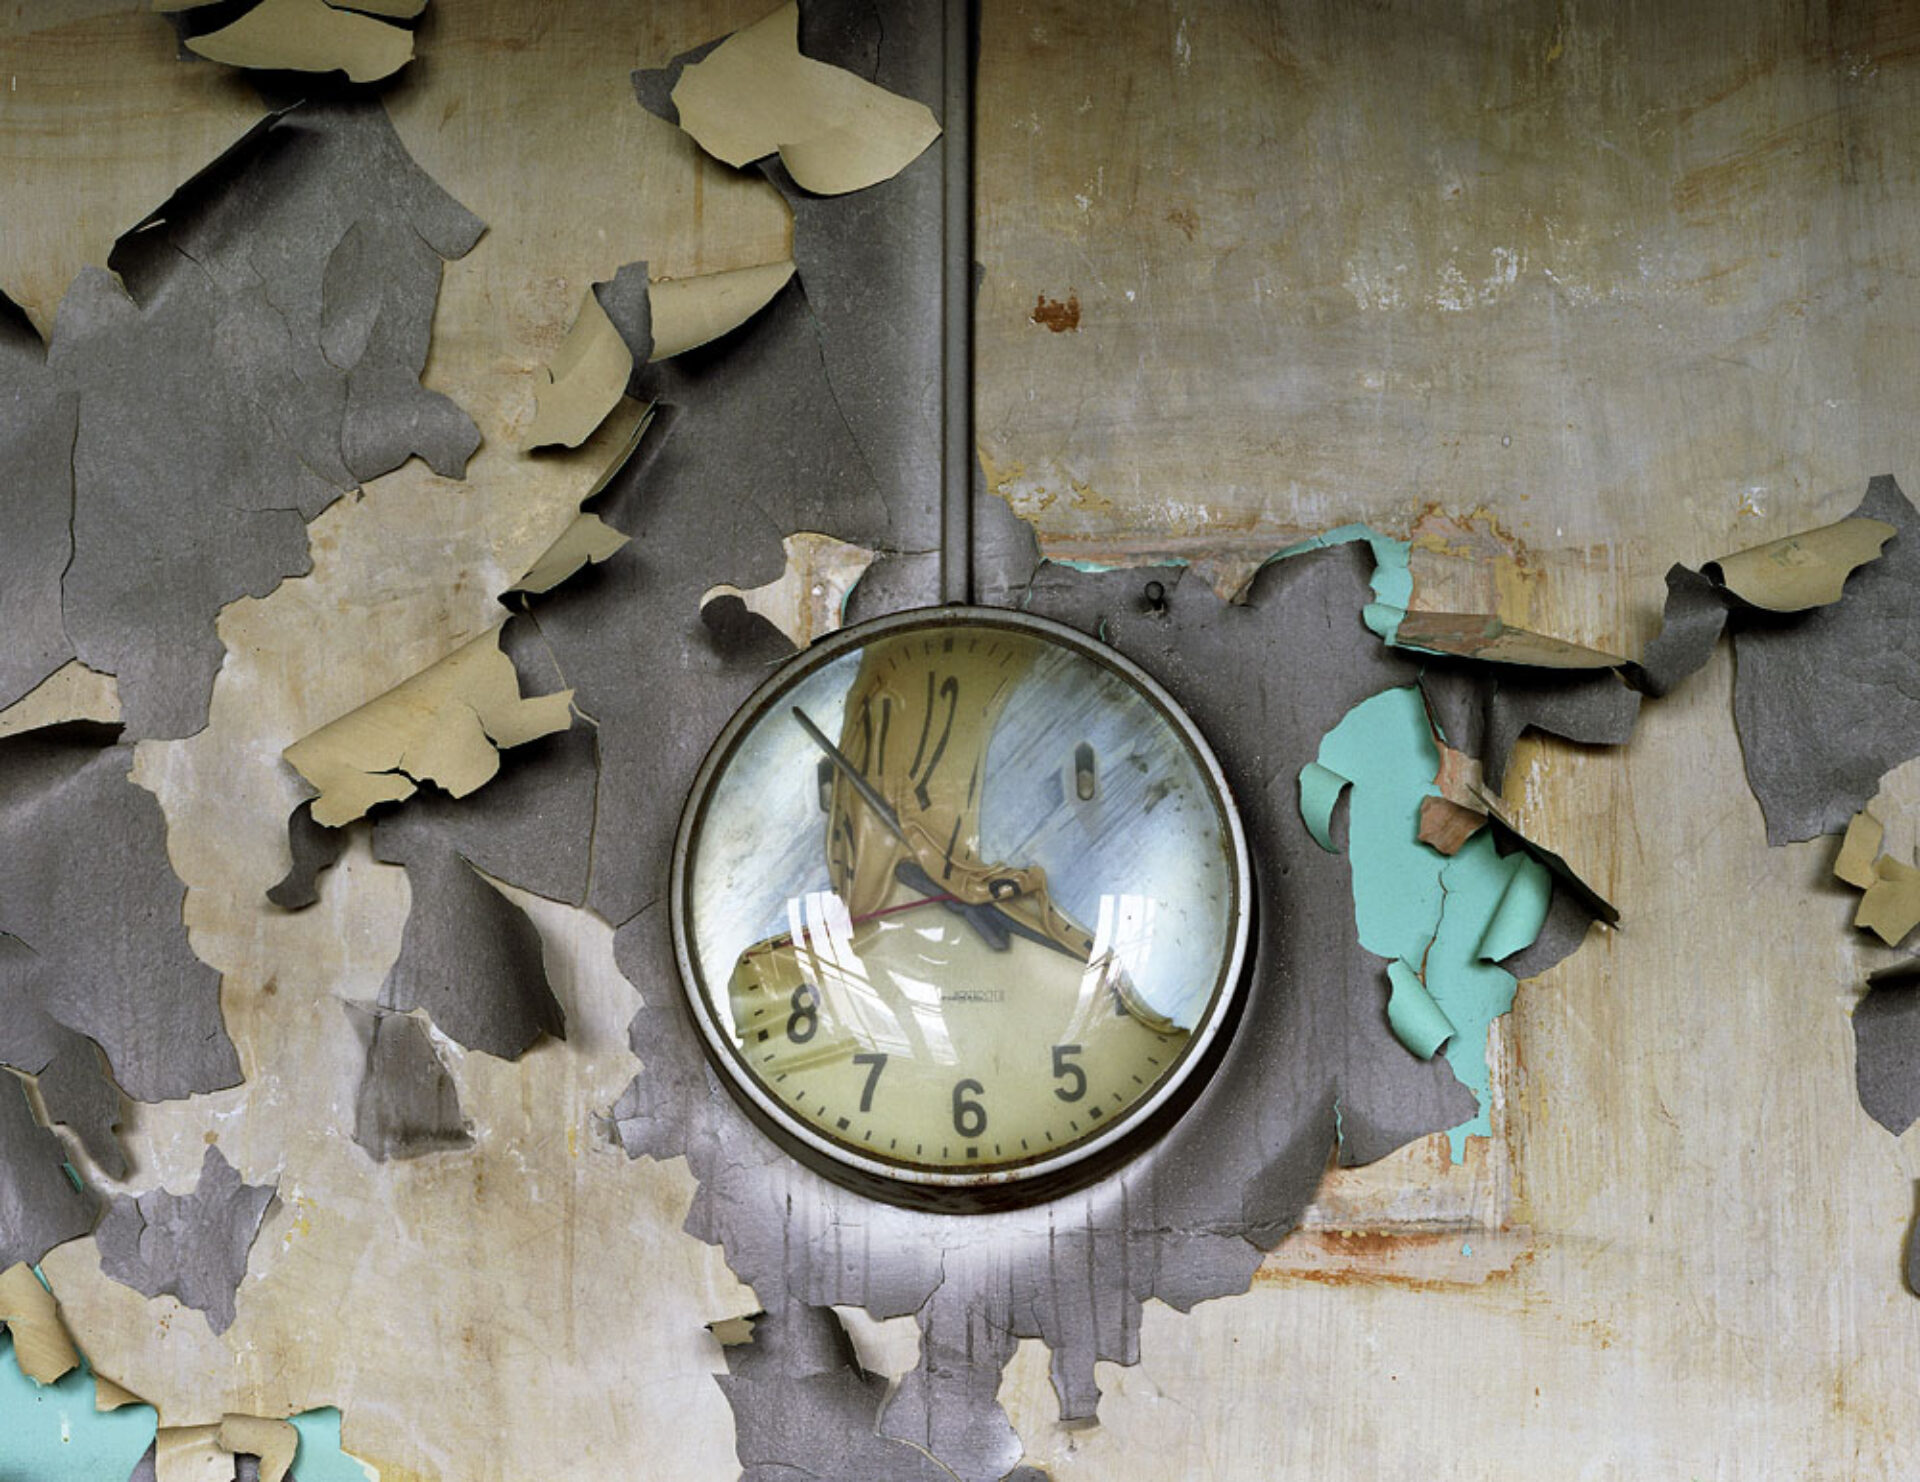 Melted Clock, Cass Technical High School, 2008, tirée de la série « The Ruins of Detroit », © Yves Marchand et Romain Meffre